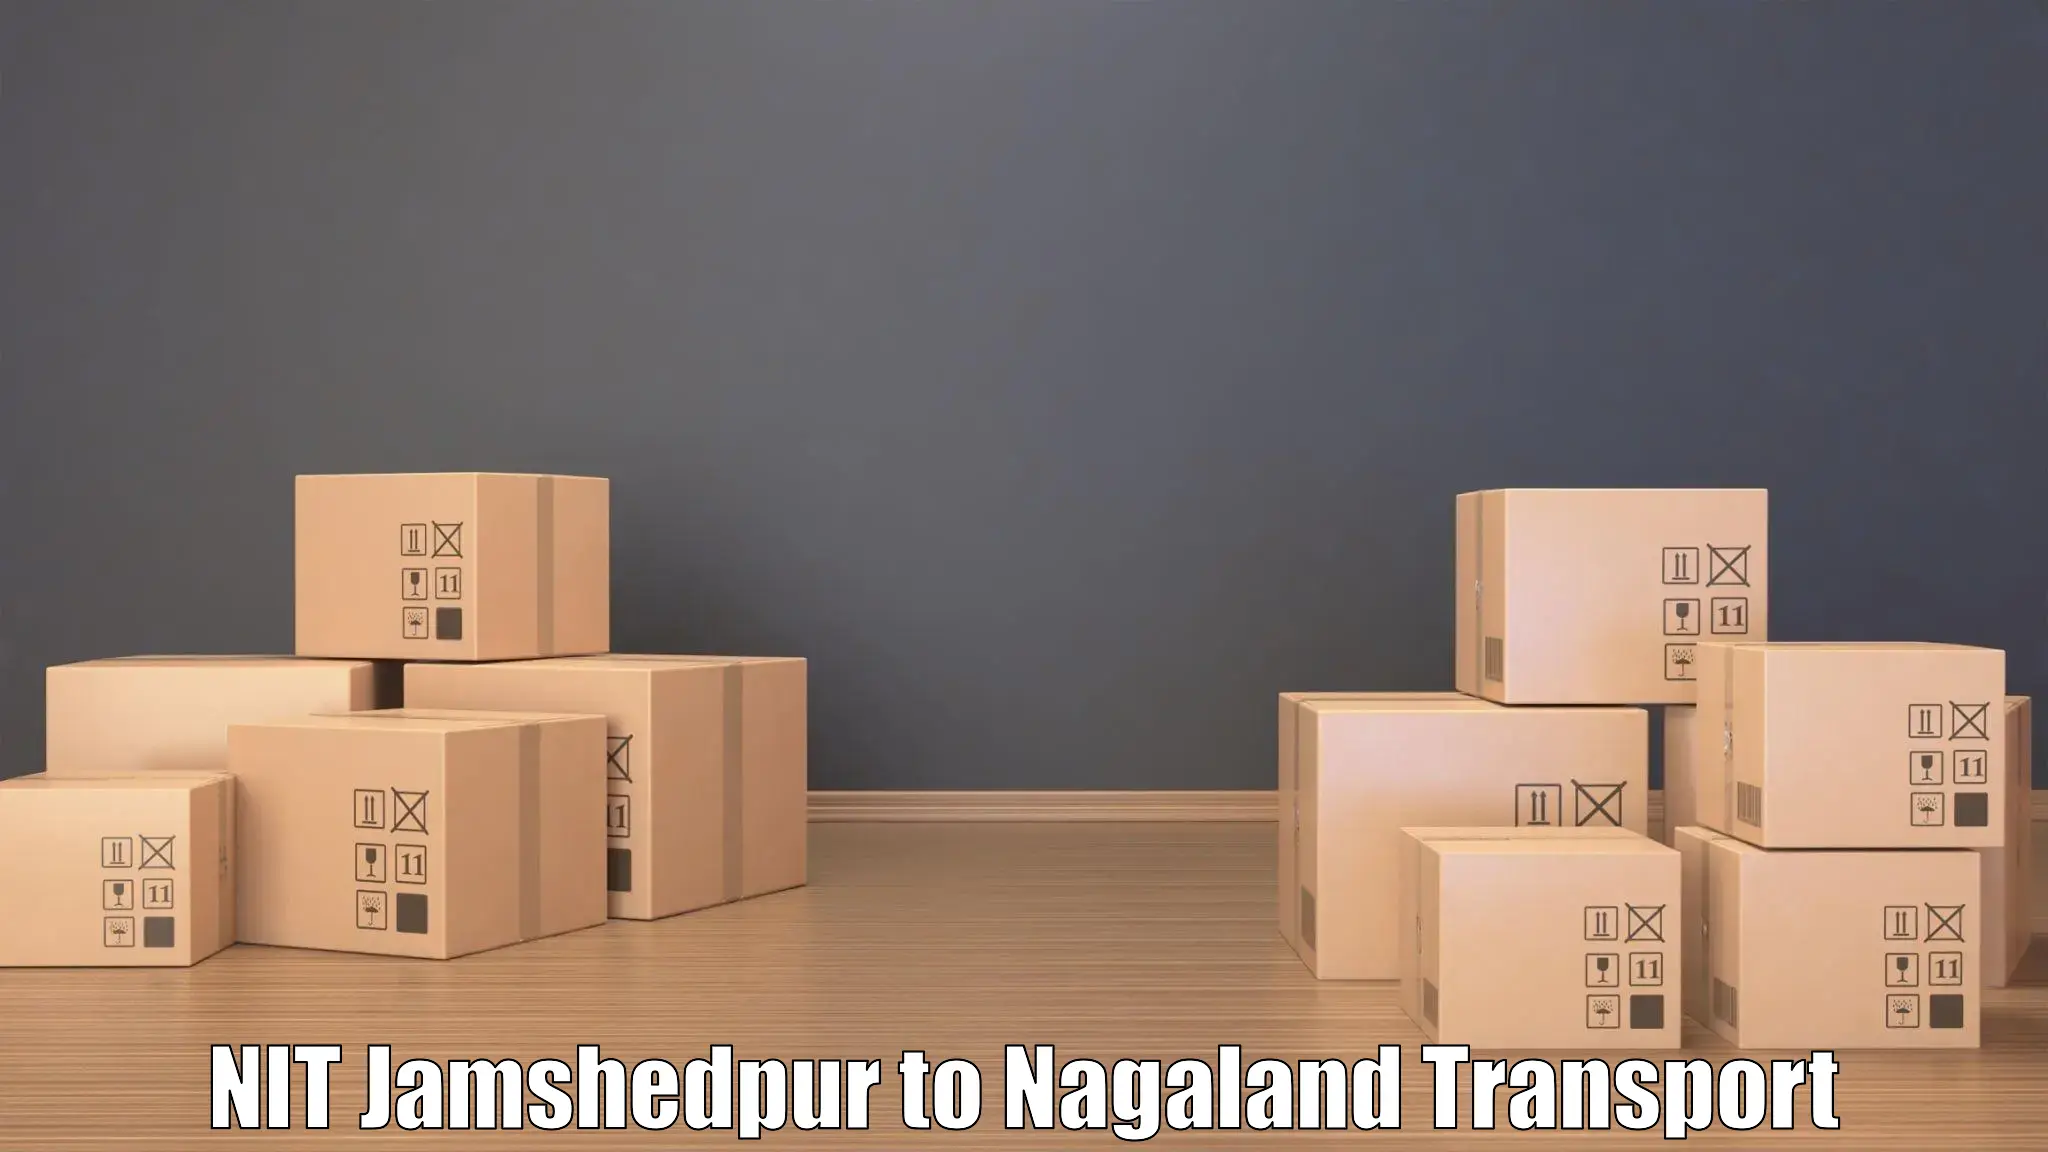 Bike transport service NIT Jamshedpur to Nagaland